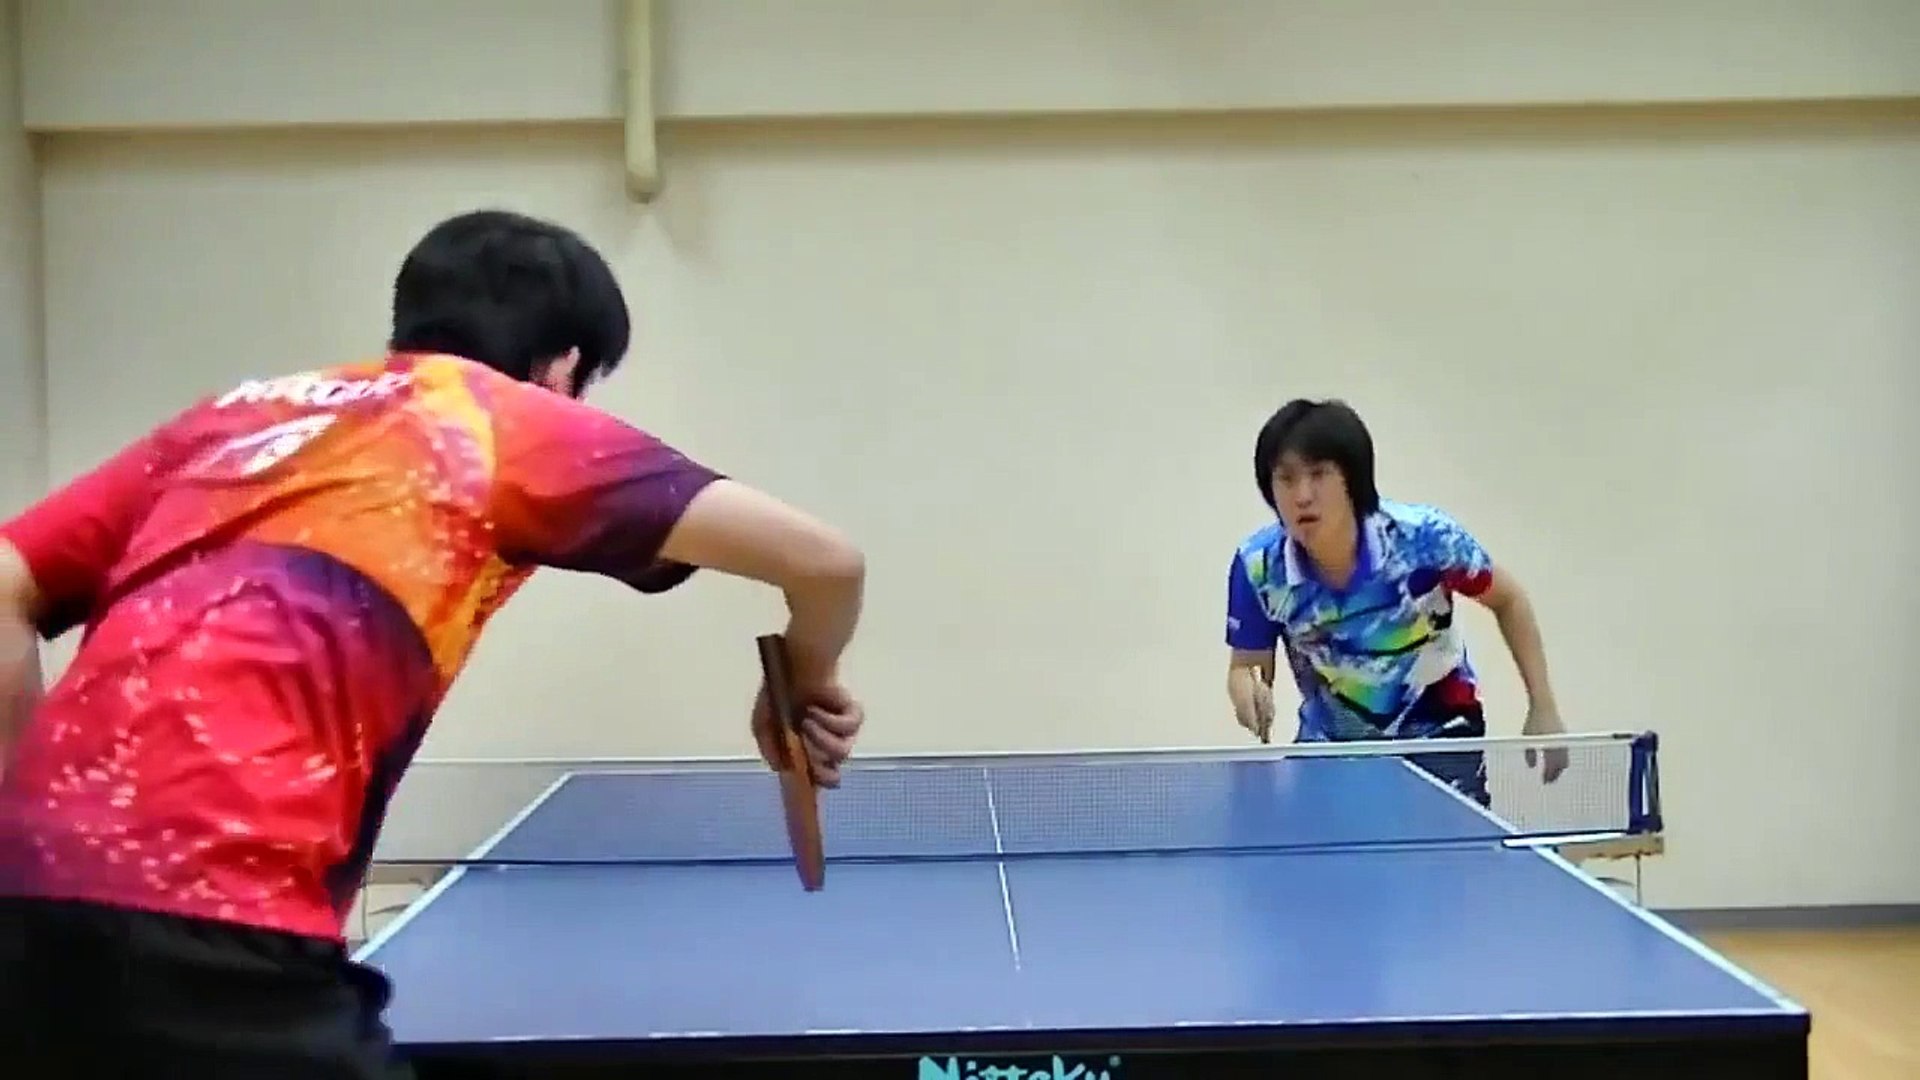 Des japonais virtuoses de la raquette qui font des trucs de malade au ping- pong, juste hallucinant - Vidéo Dailymotion